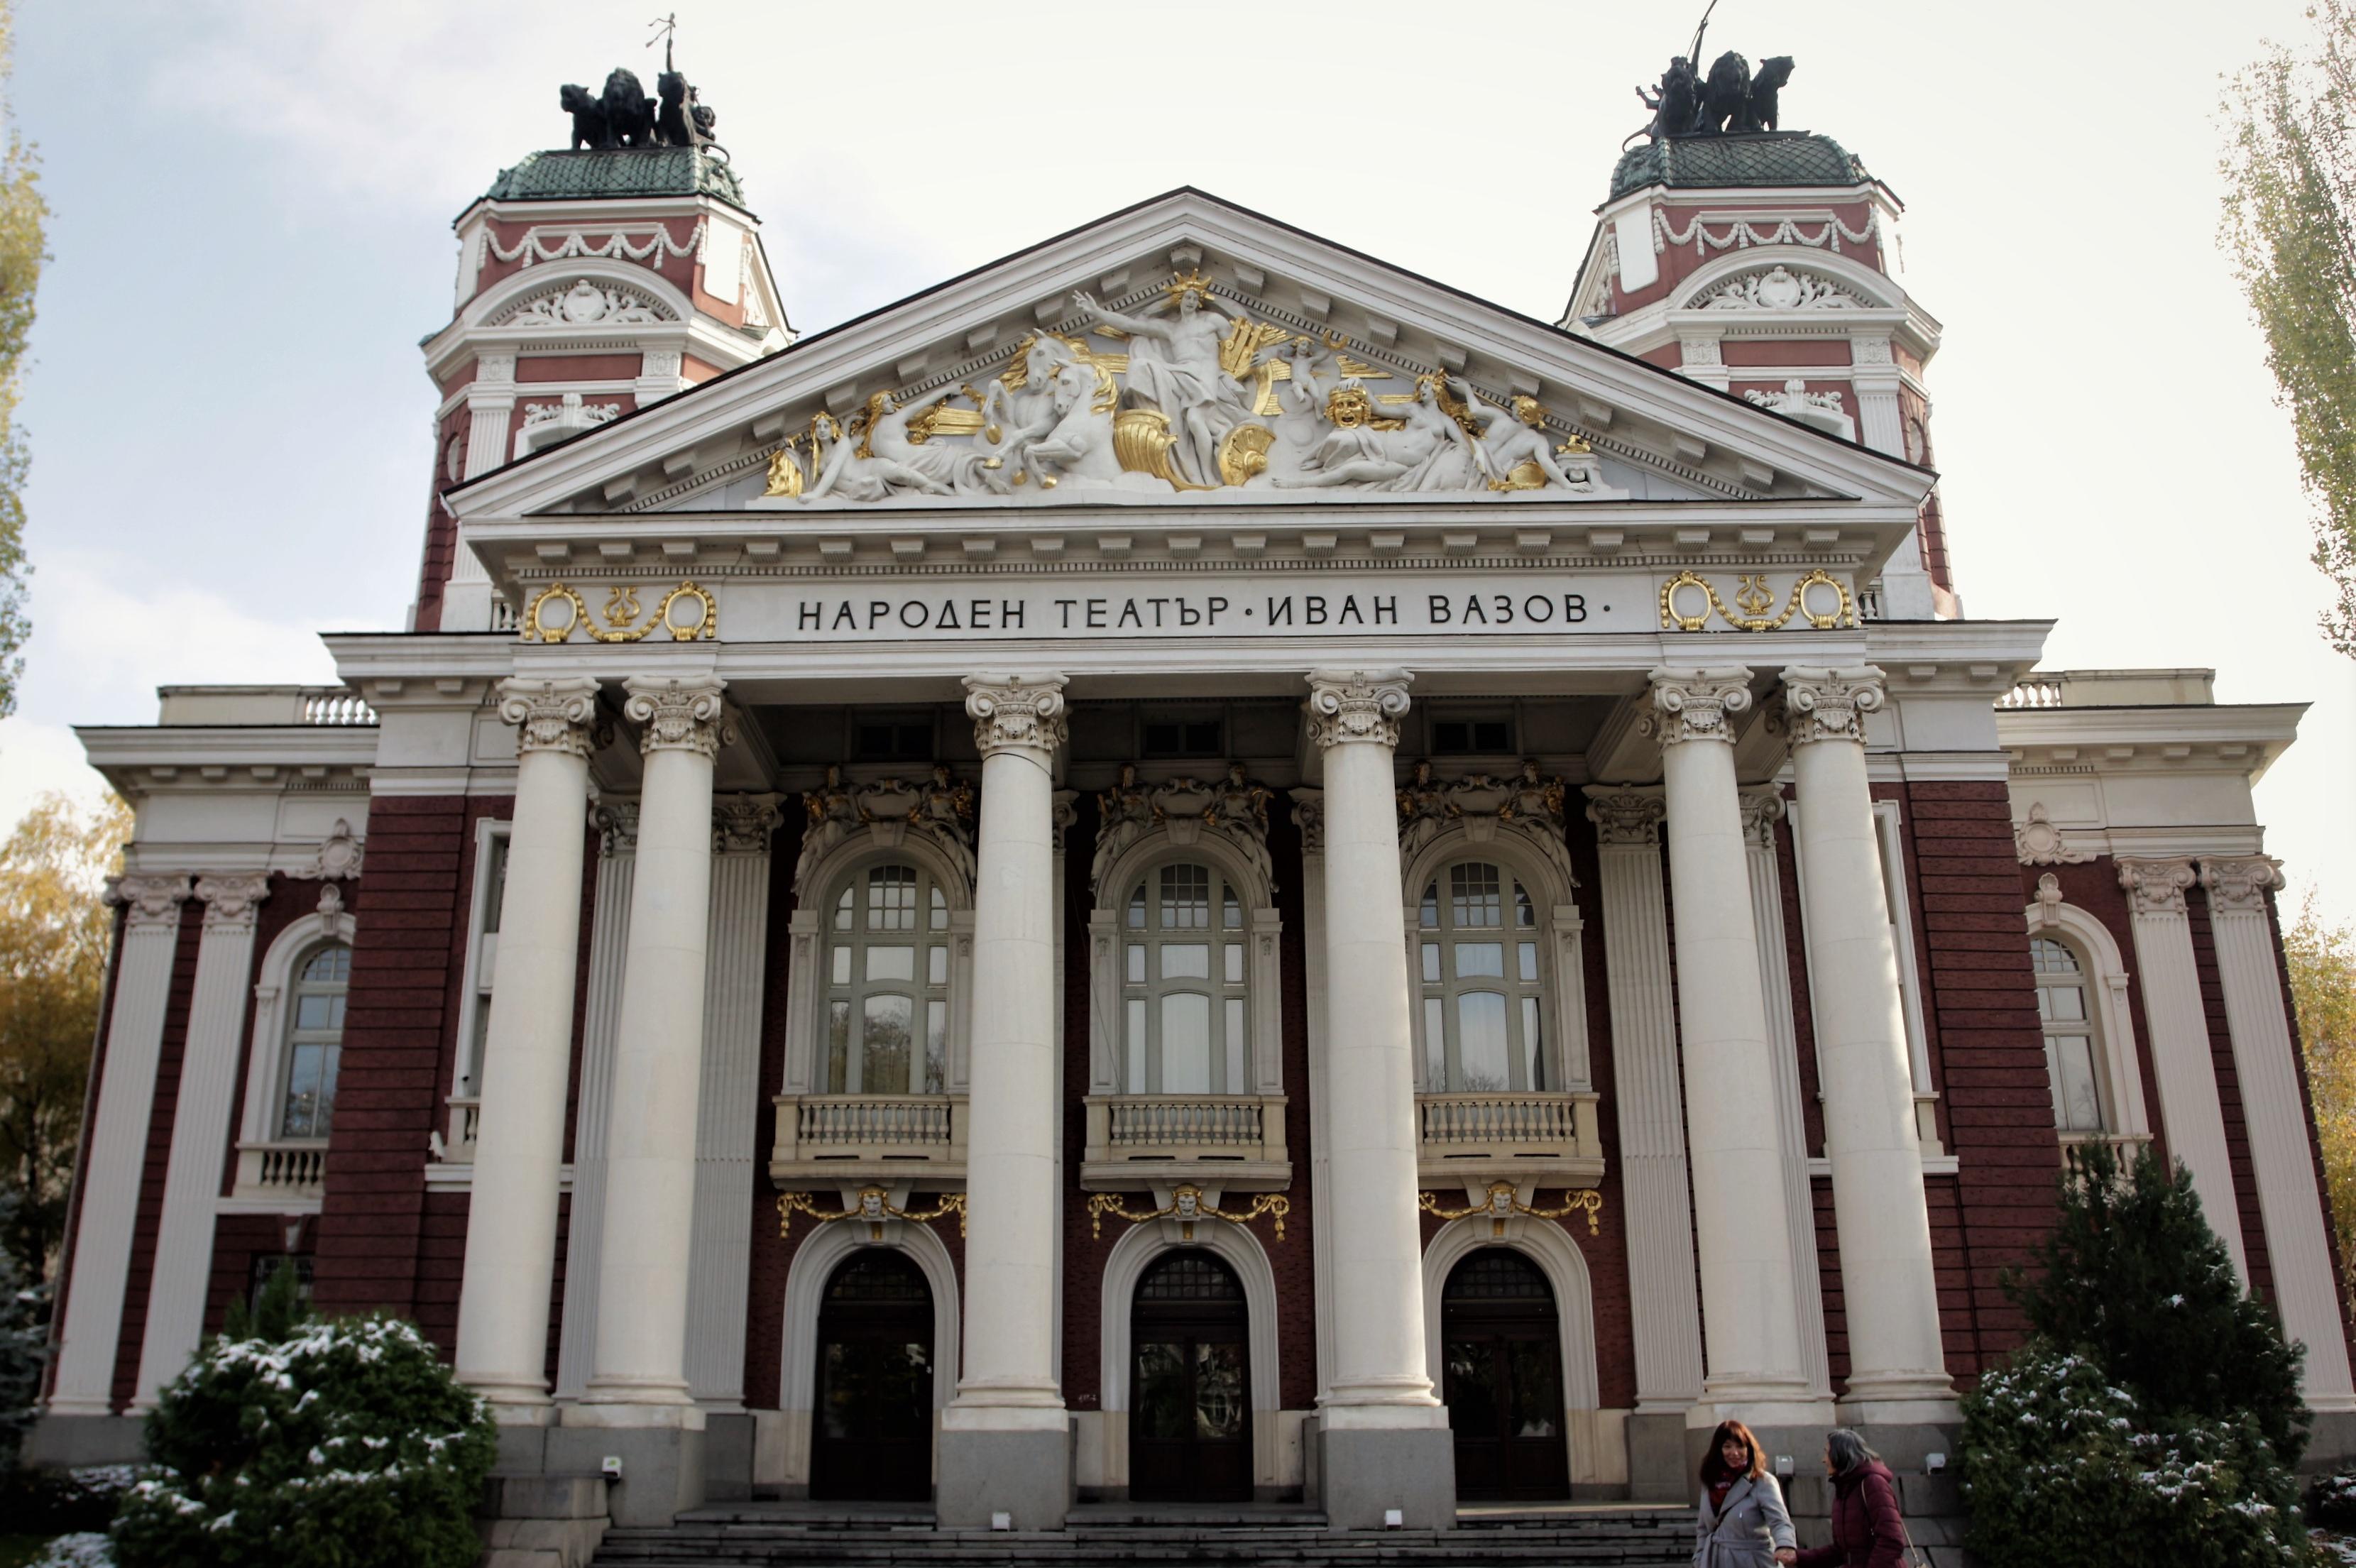 Монтират ново външно осветление на Народен театър „Иван Вазов“